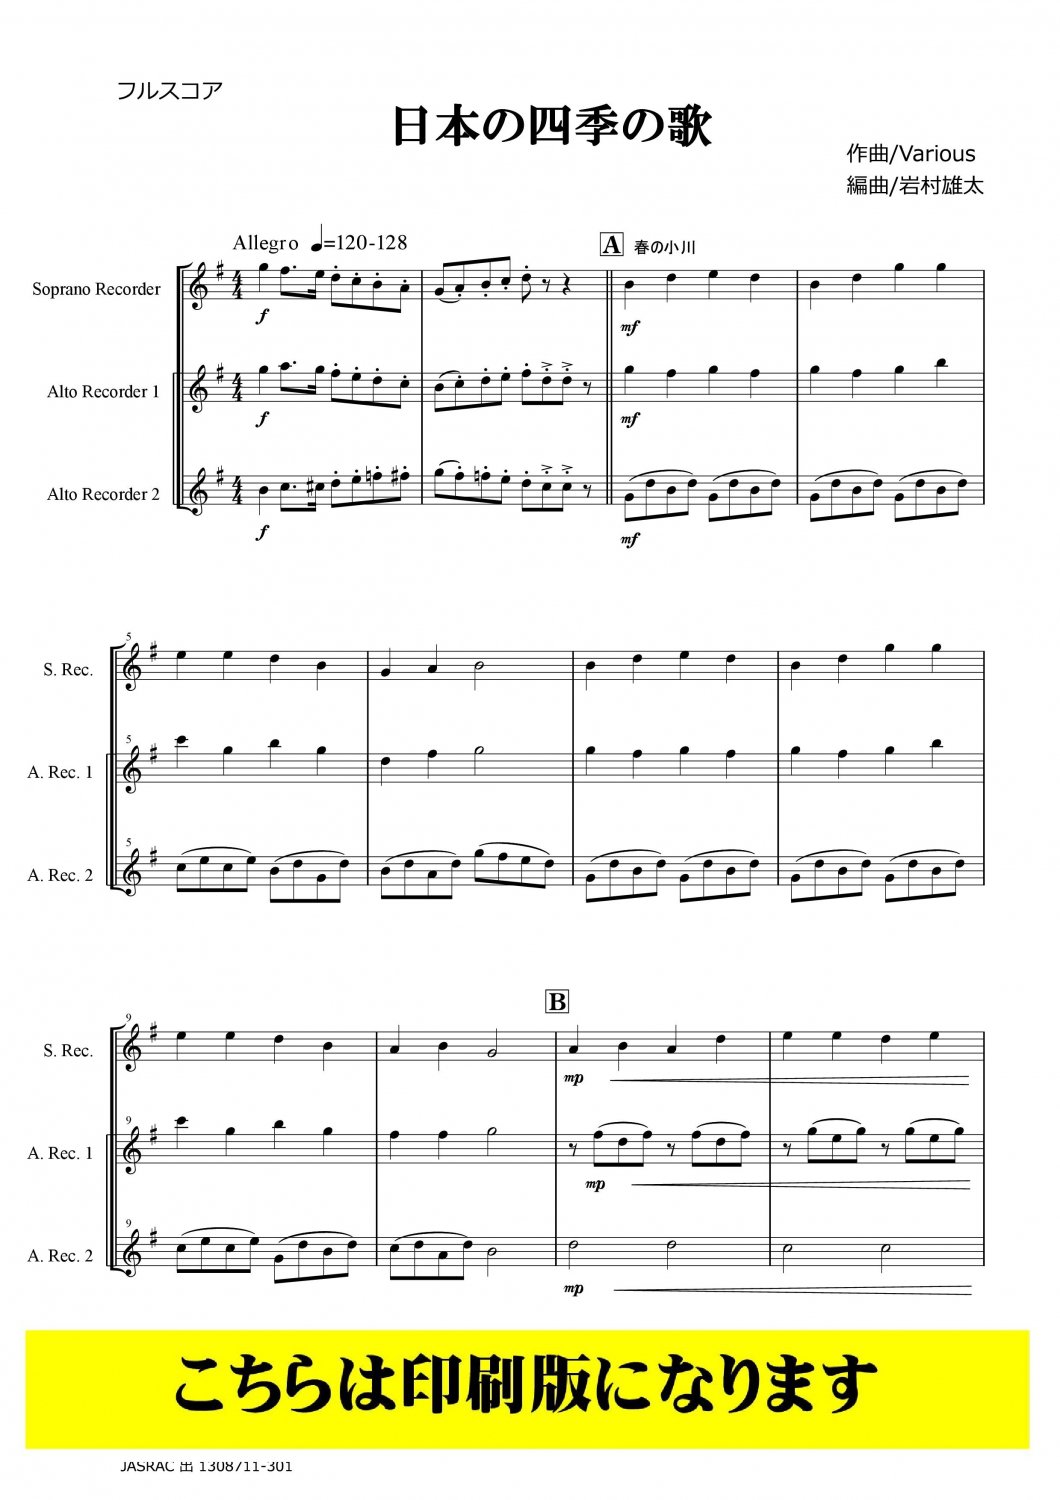 ファイナルファンタジー7 アルトリコーダーアンサンブル 楽譜 - 楽譜 